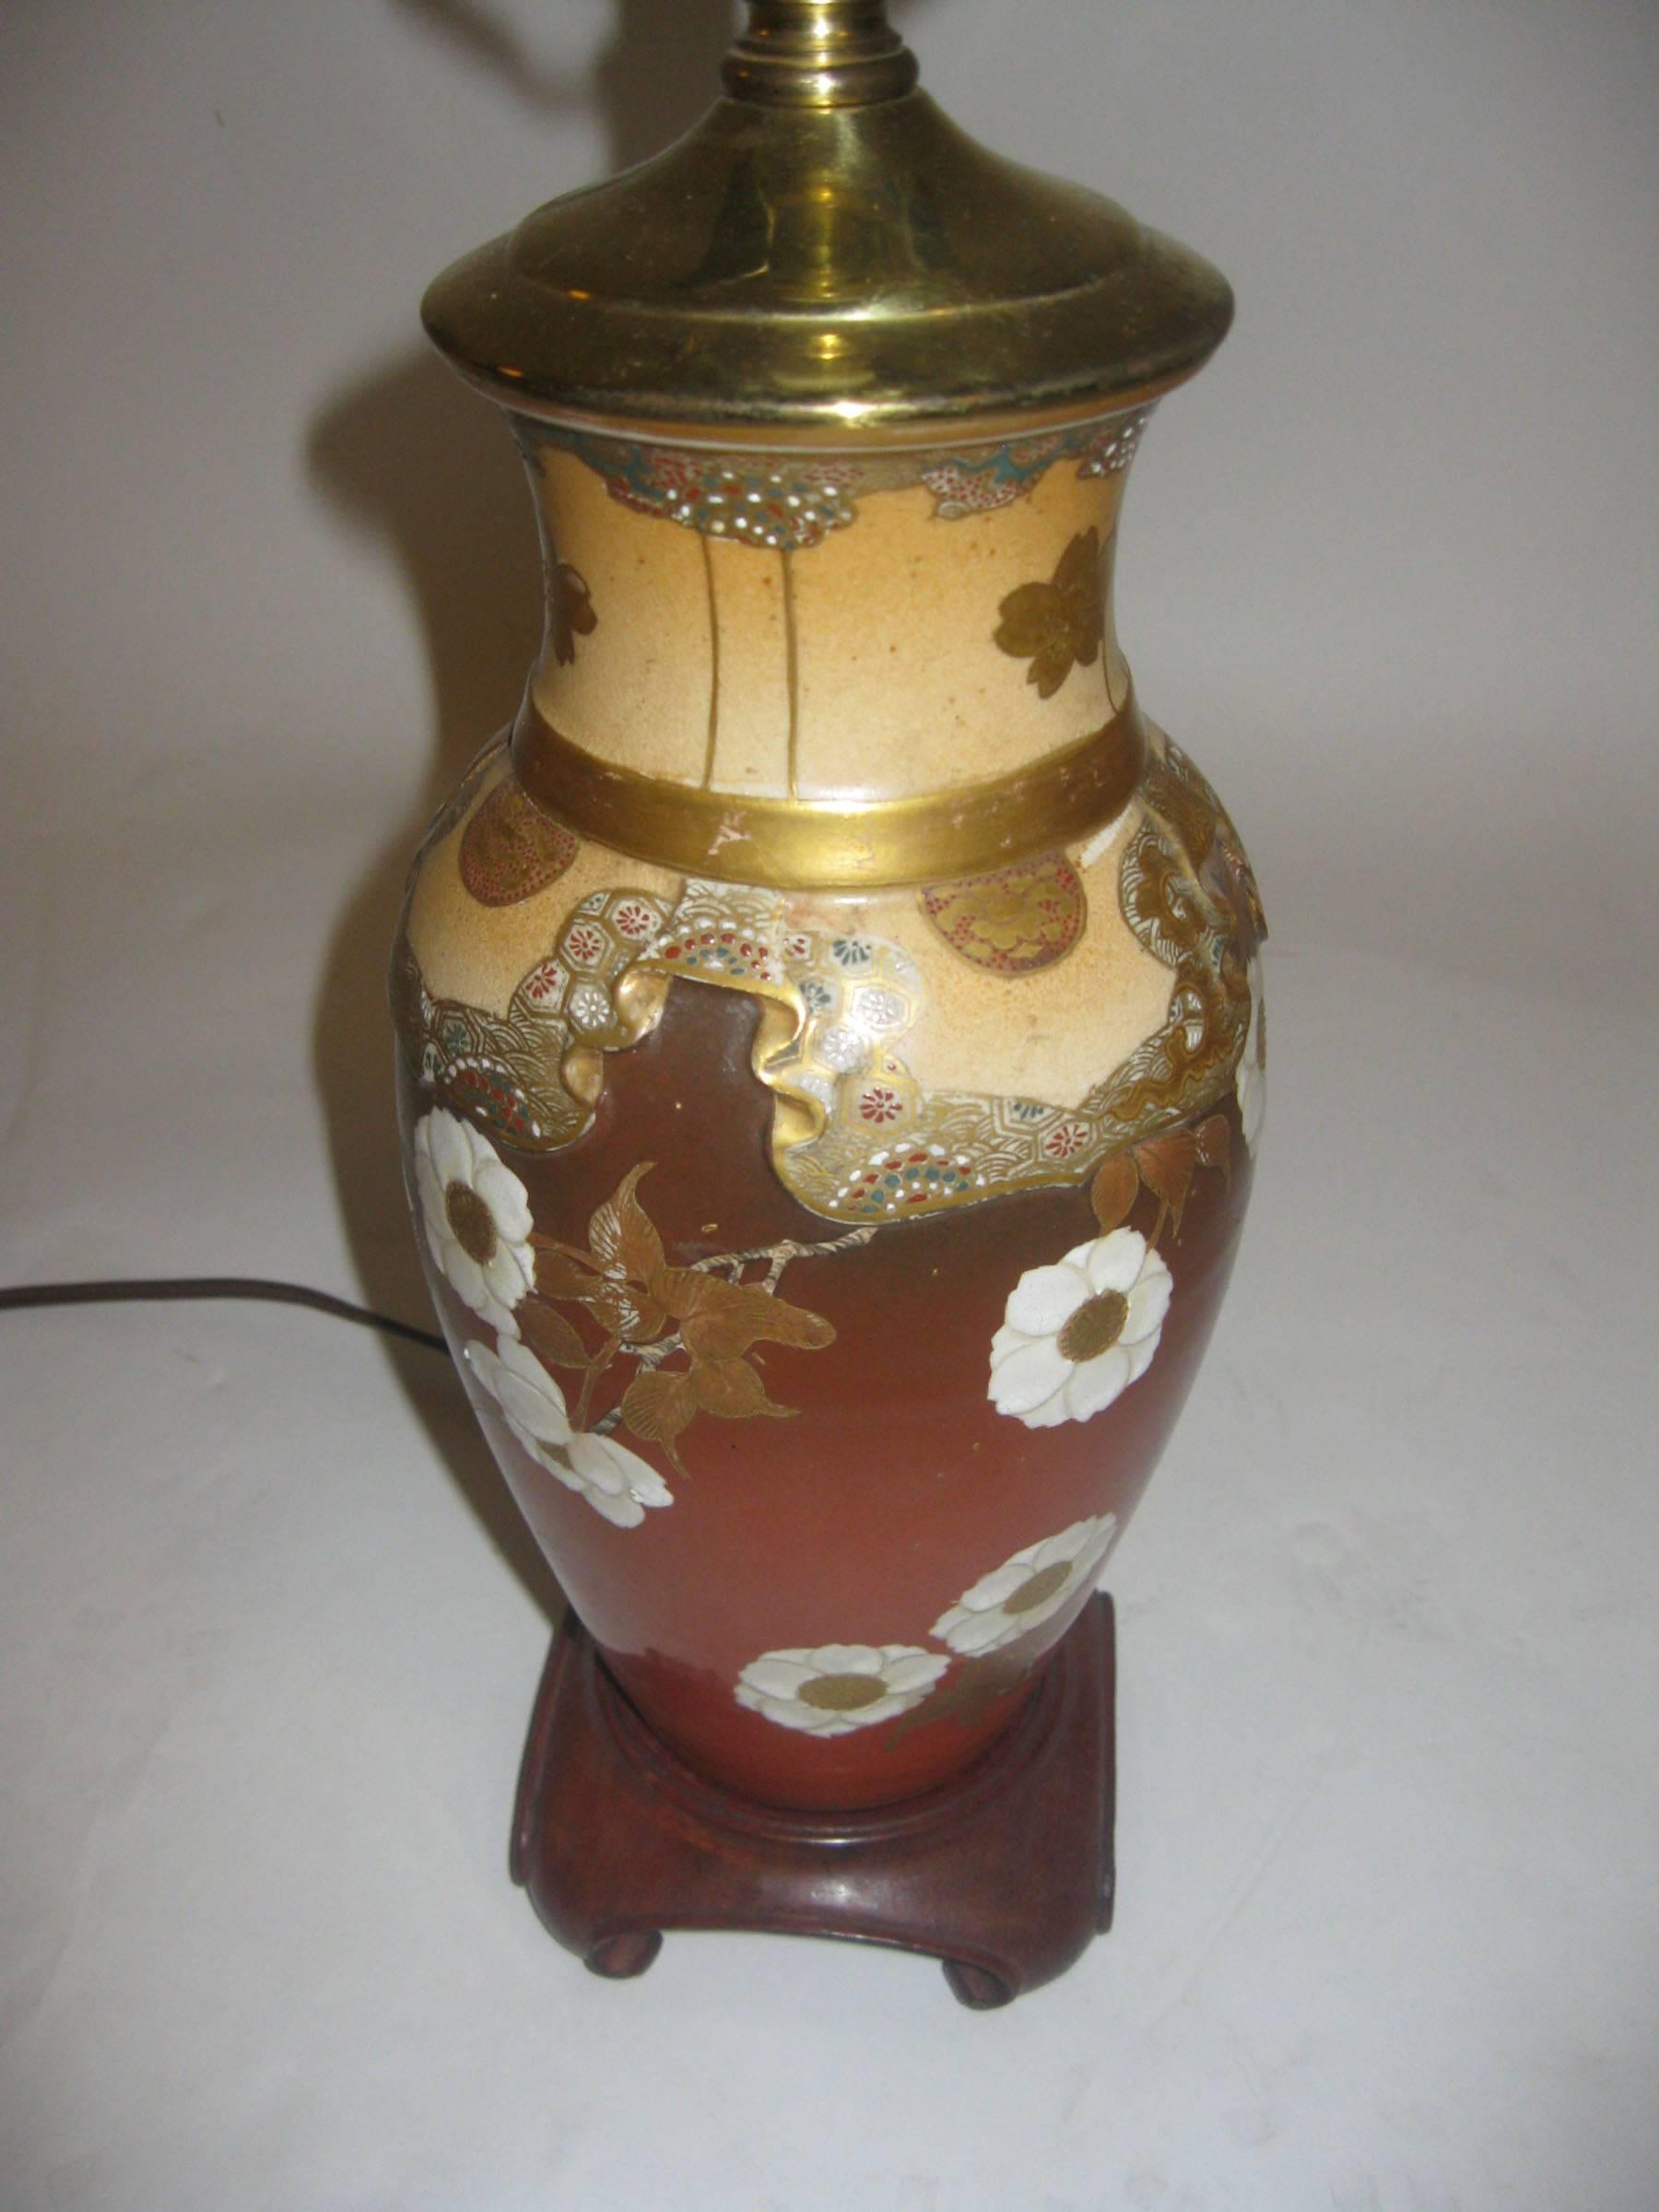 Fabriqué pour le marché européen durant la période Meiji, ce joli vase en porcelaine japonaise Satsuma a été transformé en lampe de table et monté sur une base en bois. Décorée de délicates fleurs et présentant des émaux et des dorures sur une